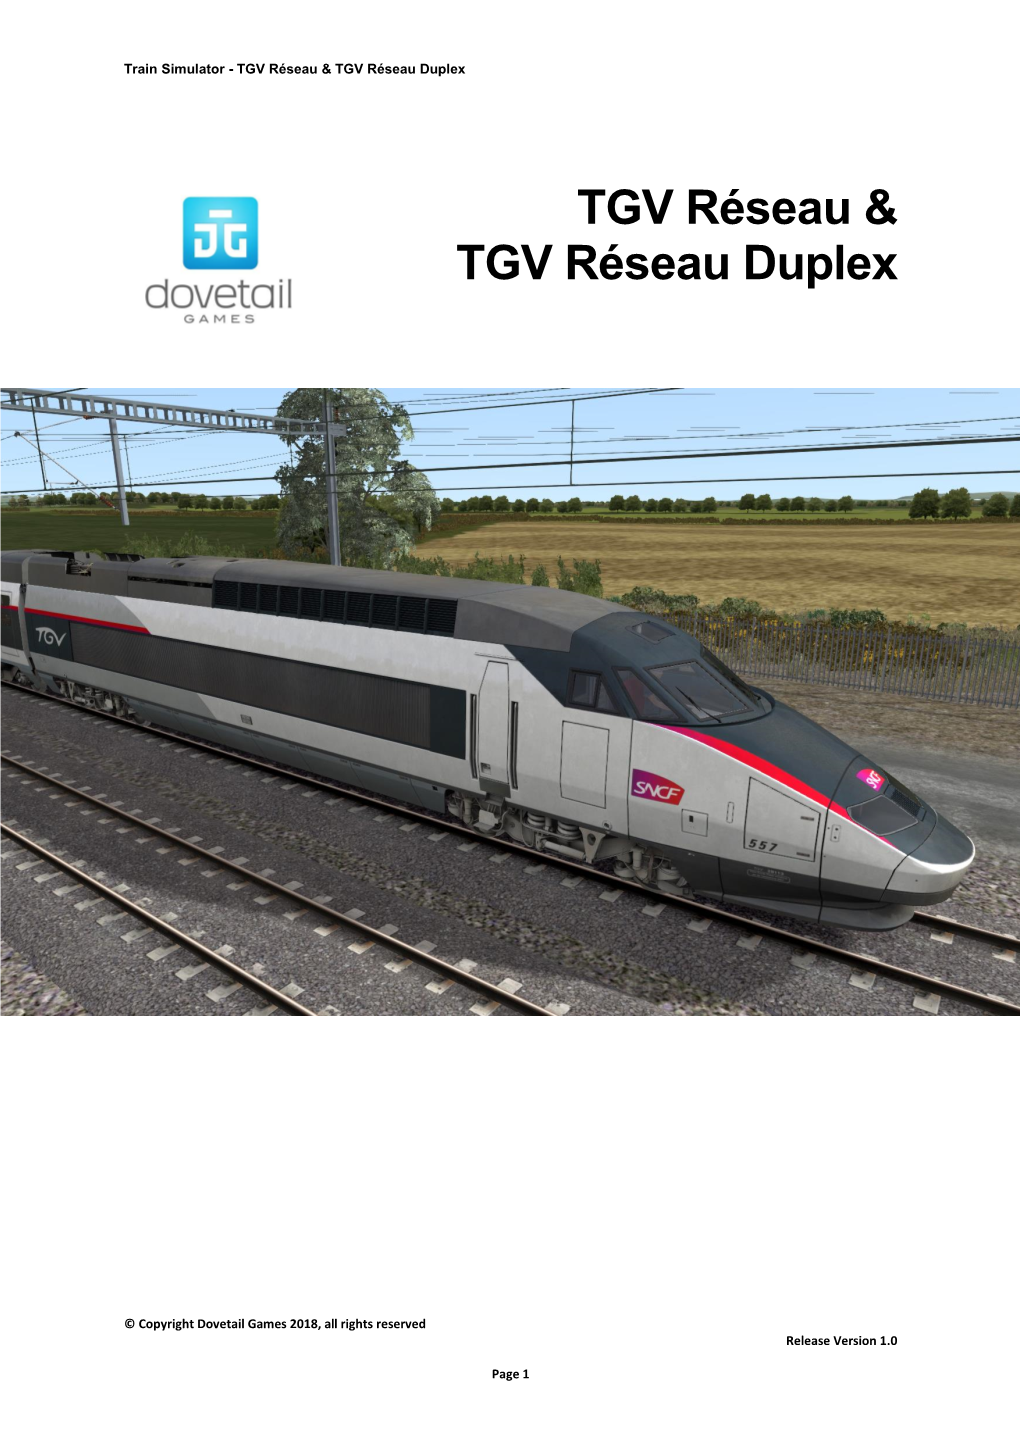 TGV Réseau & TGV Réseau Duplex